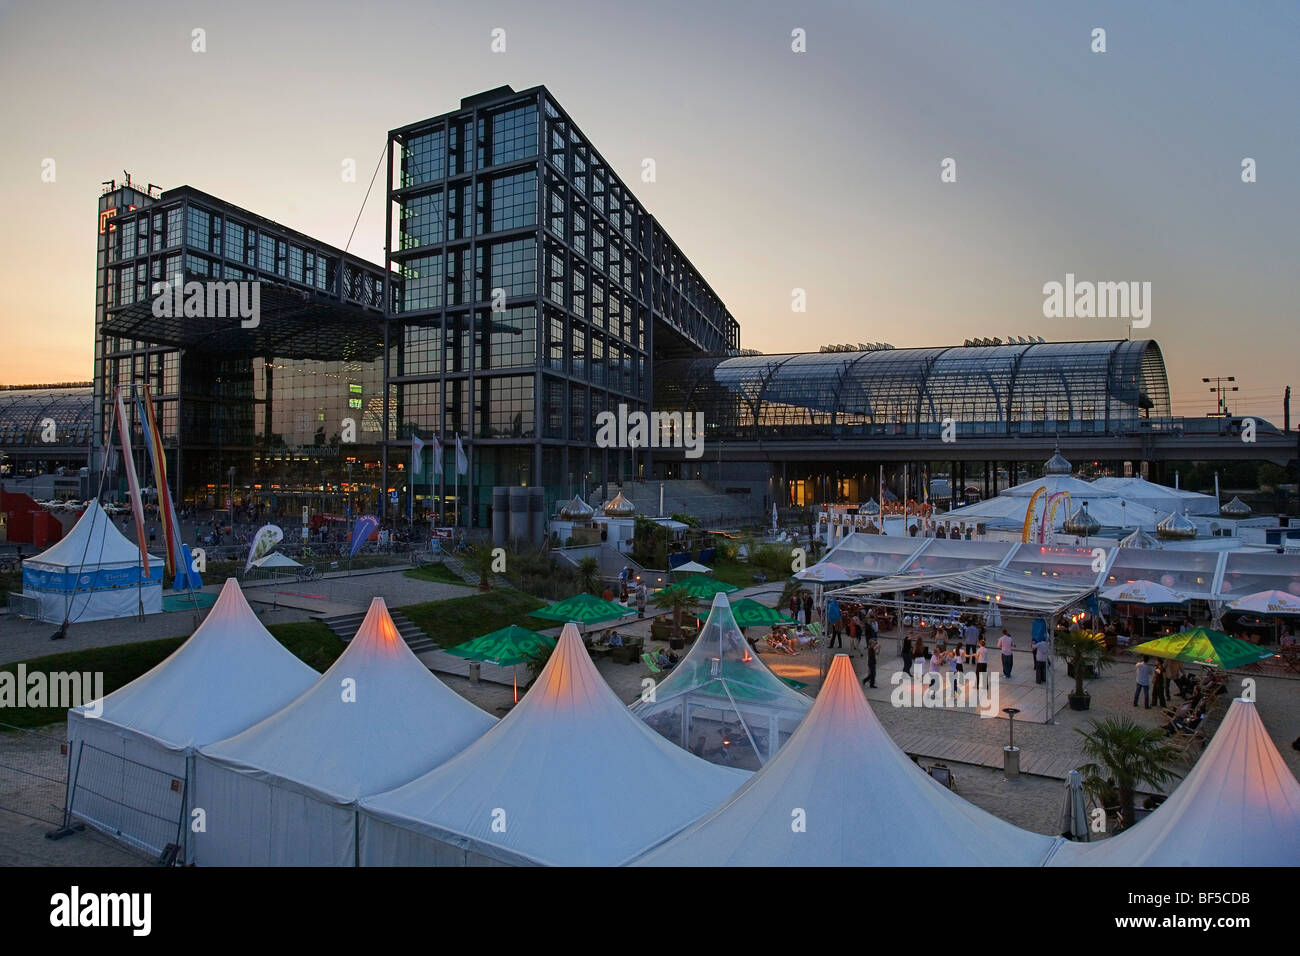 Berlin Hauptbahnhof, la gare centrale, avec des tentes de l'événement au premier plan sur un début de soirée d'été, Mitte, Berlin, Allemagne Banque D'Images